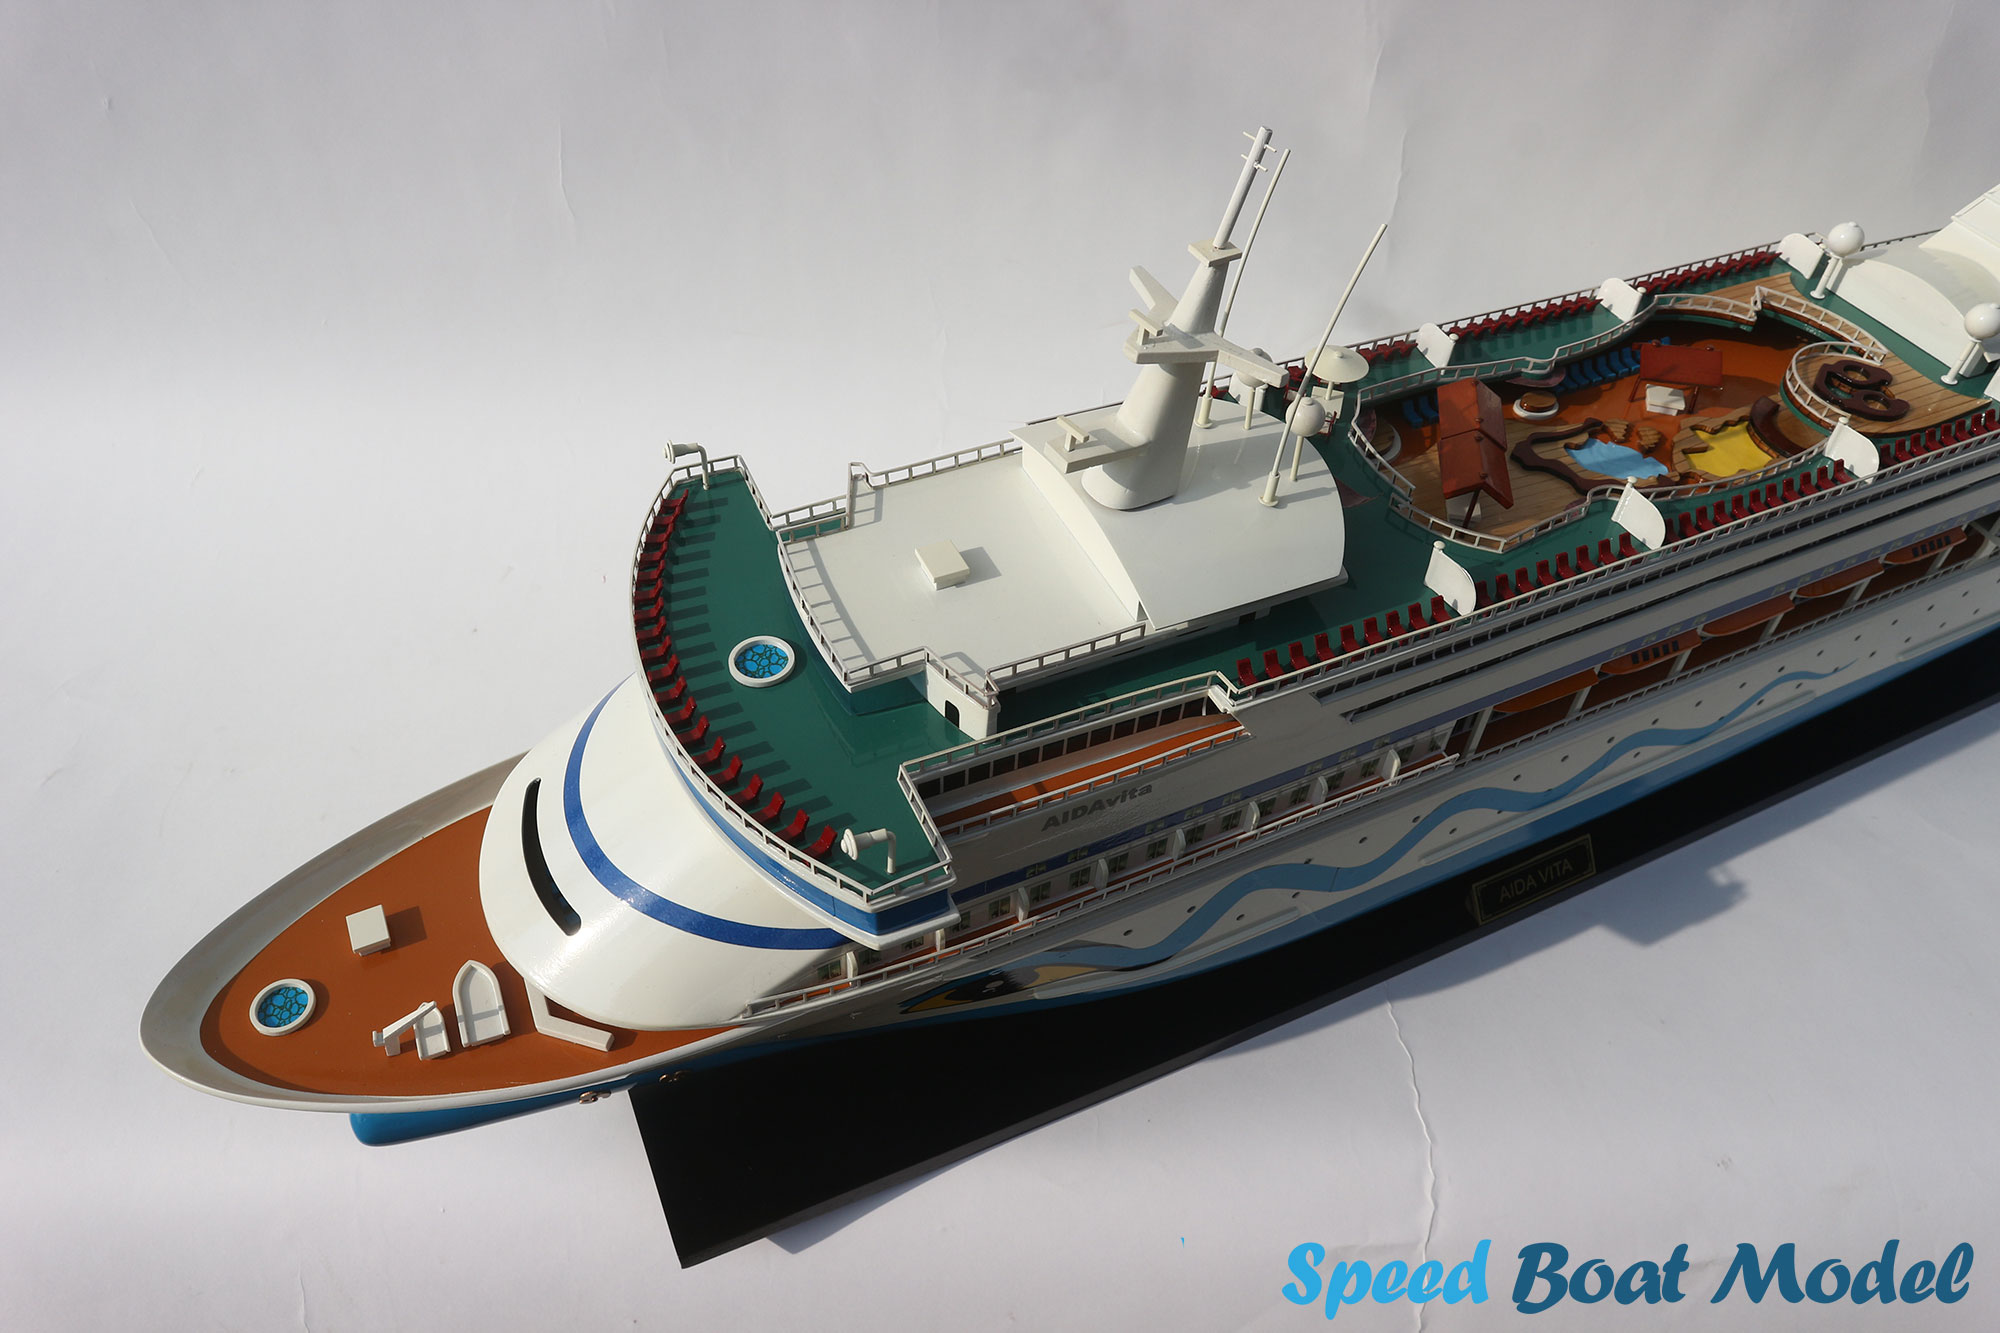 Aida Vita Ocean Liner Model 31.5